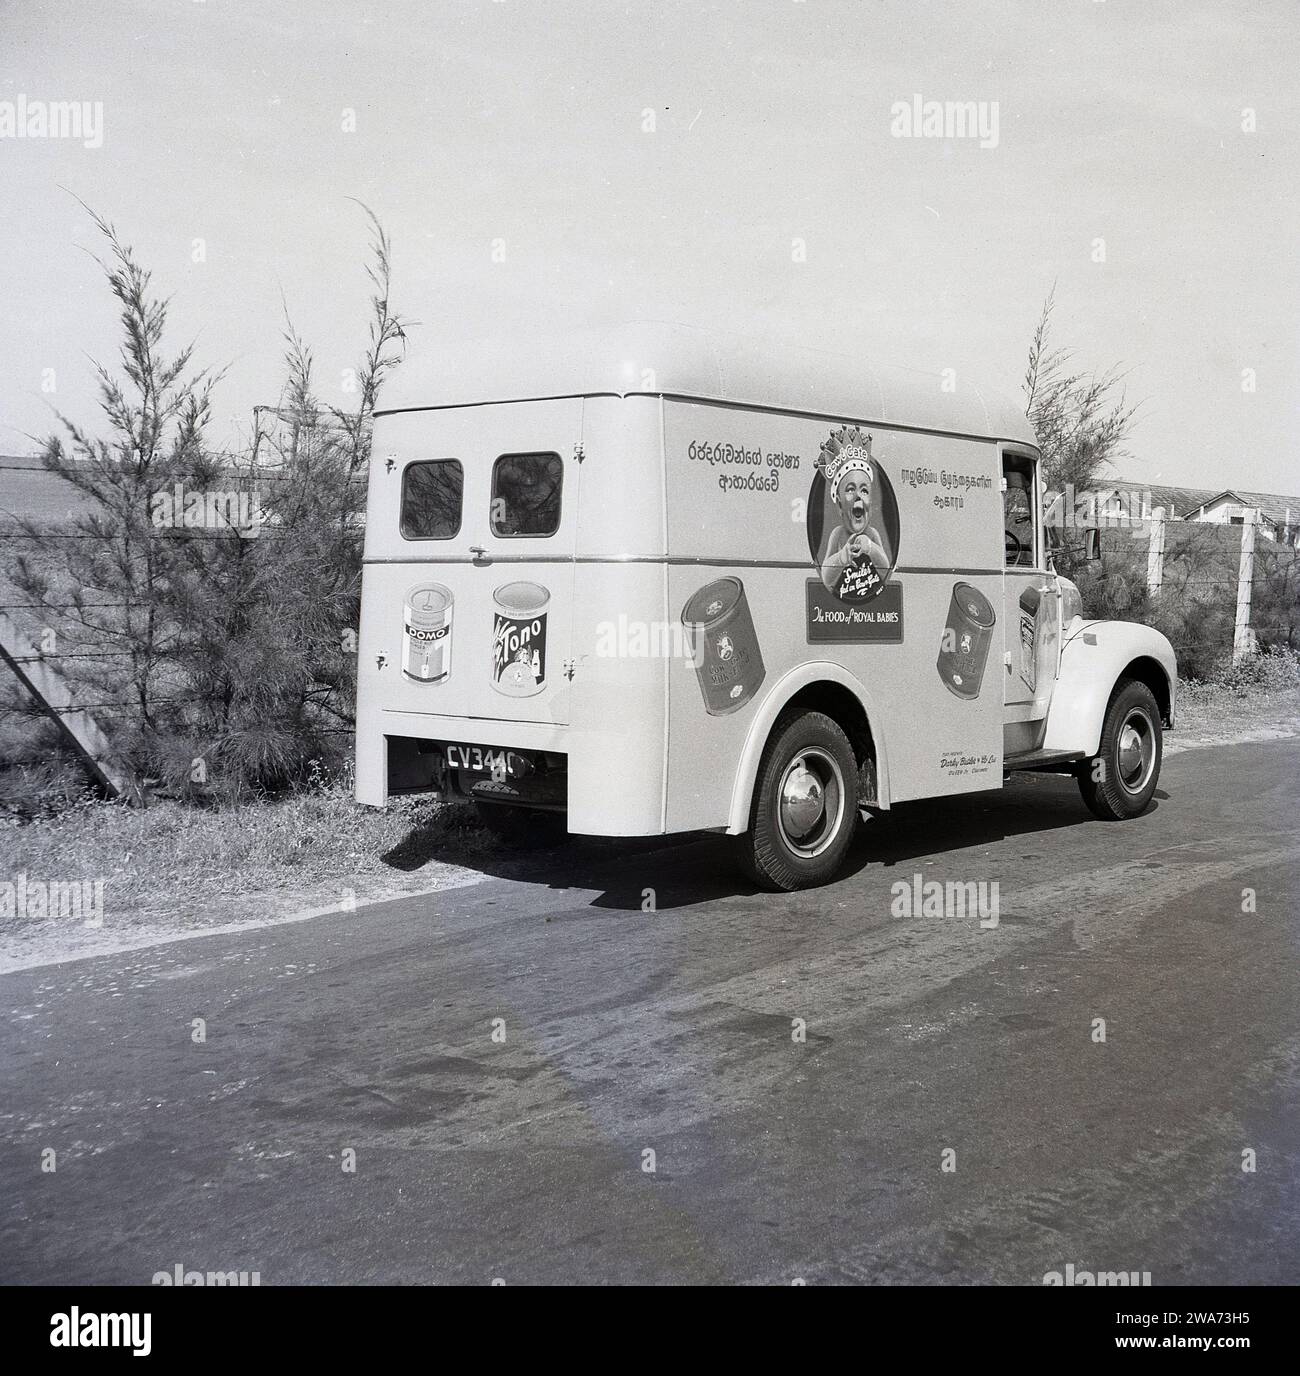 1953, storico, un furgone Commer su una strada a Colombo, Celyon, Asia meridionale. Sul lato del furgone, un bambino sorridente che indossa una corona con lo strapline, "The Food of Royal Babies" e barattoli di mucca e latte alimentare. Agenti unici: Darley Butler & Co Ltd, Queen St, Colombo. The Cow & Gate 'smiler', un bambino felice e dall'aspetto sano, è apparso per la prima volta sulle confezioni e sugli annunci pubblicitari dei prodotti negli anni '1930 Il "bambino reale; con una corona sulla testa risale al 1937 e l'incoronazione di Briitsh re Giorgio vi, quando la compagnia di diari inglese iniziò a usare la "Royal Association" per sostenere la loro formula di latte per bambini. Foto Stock